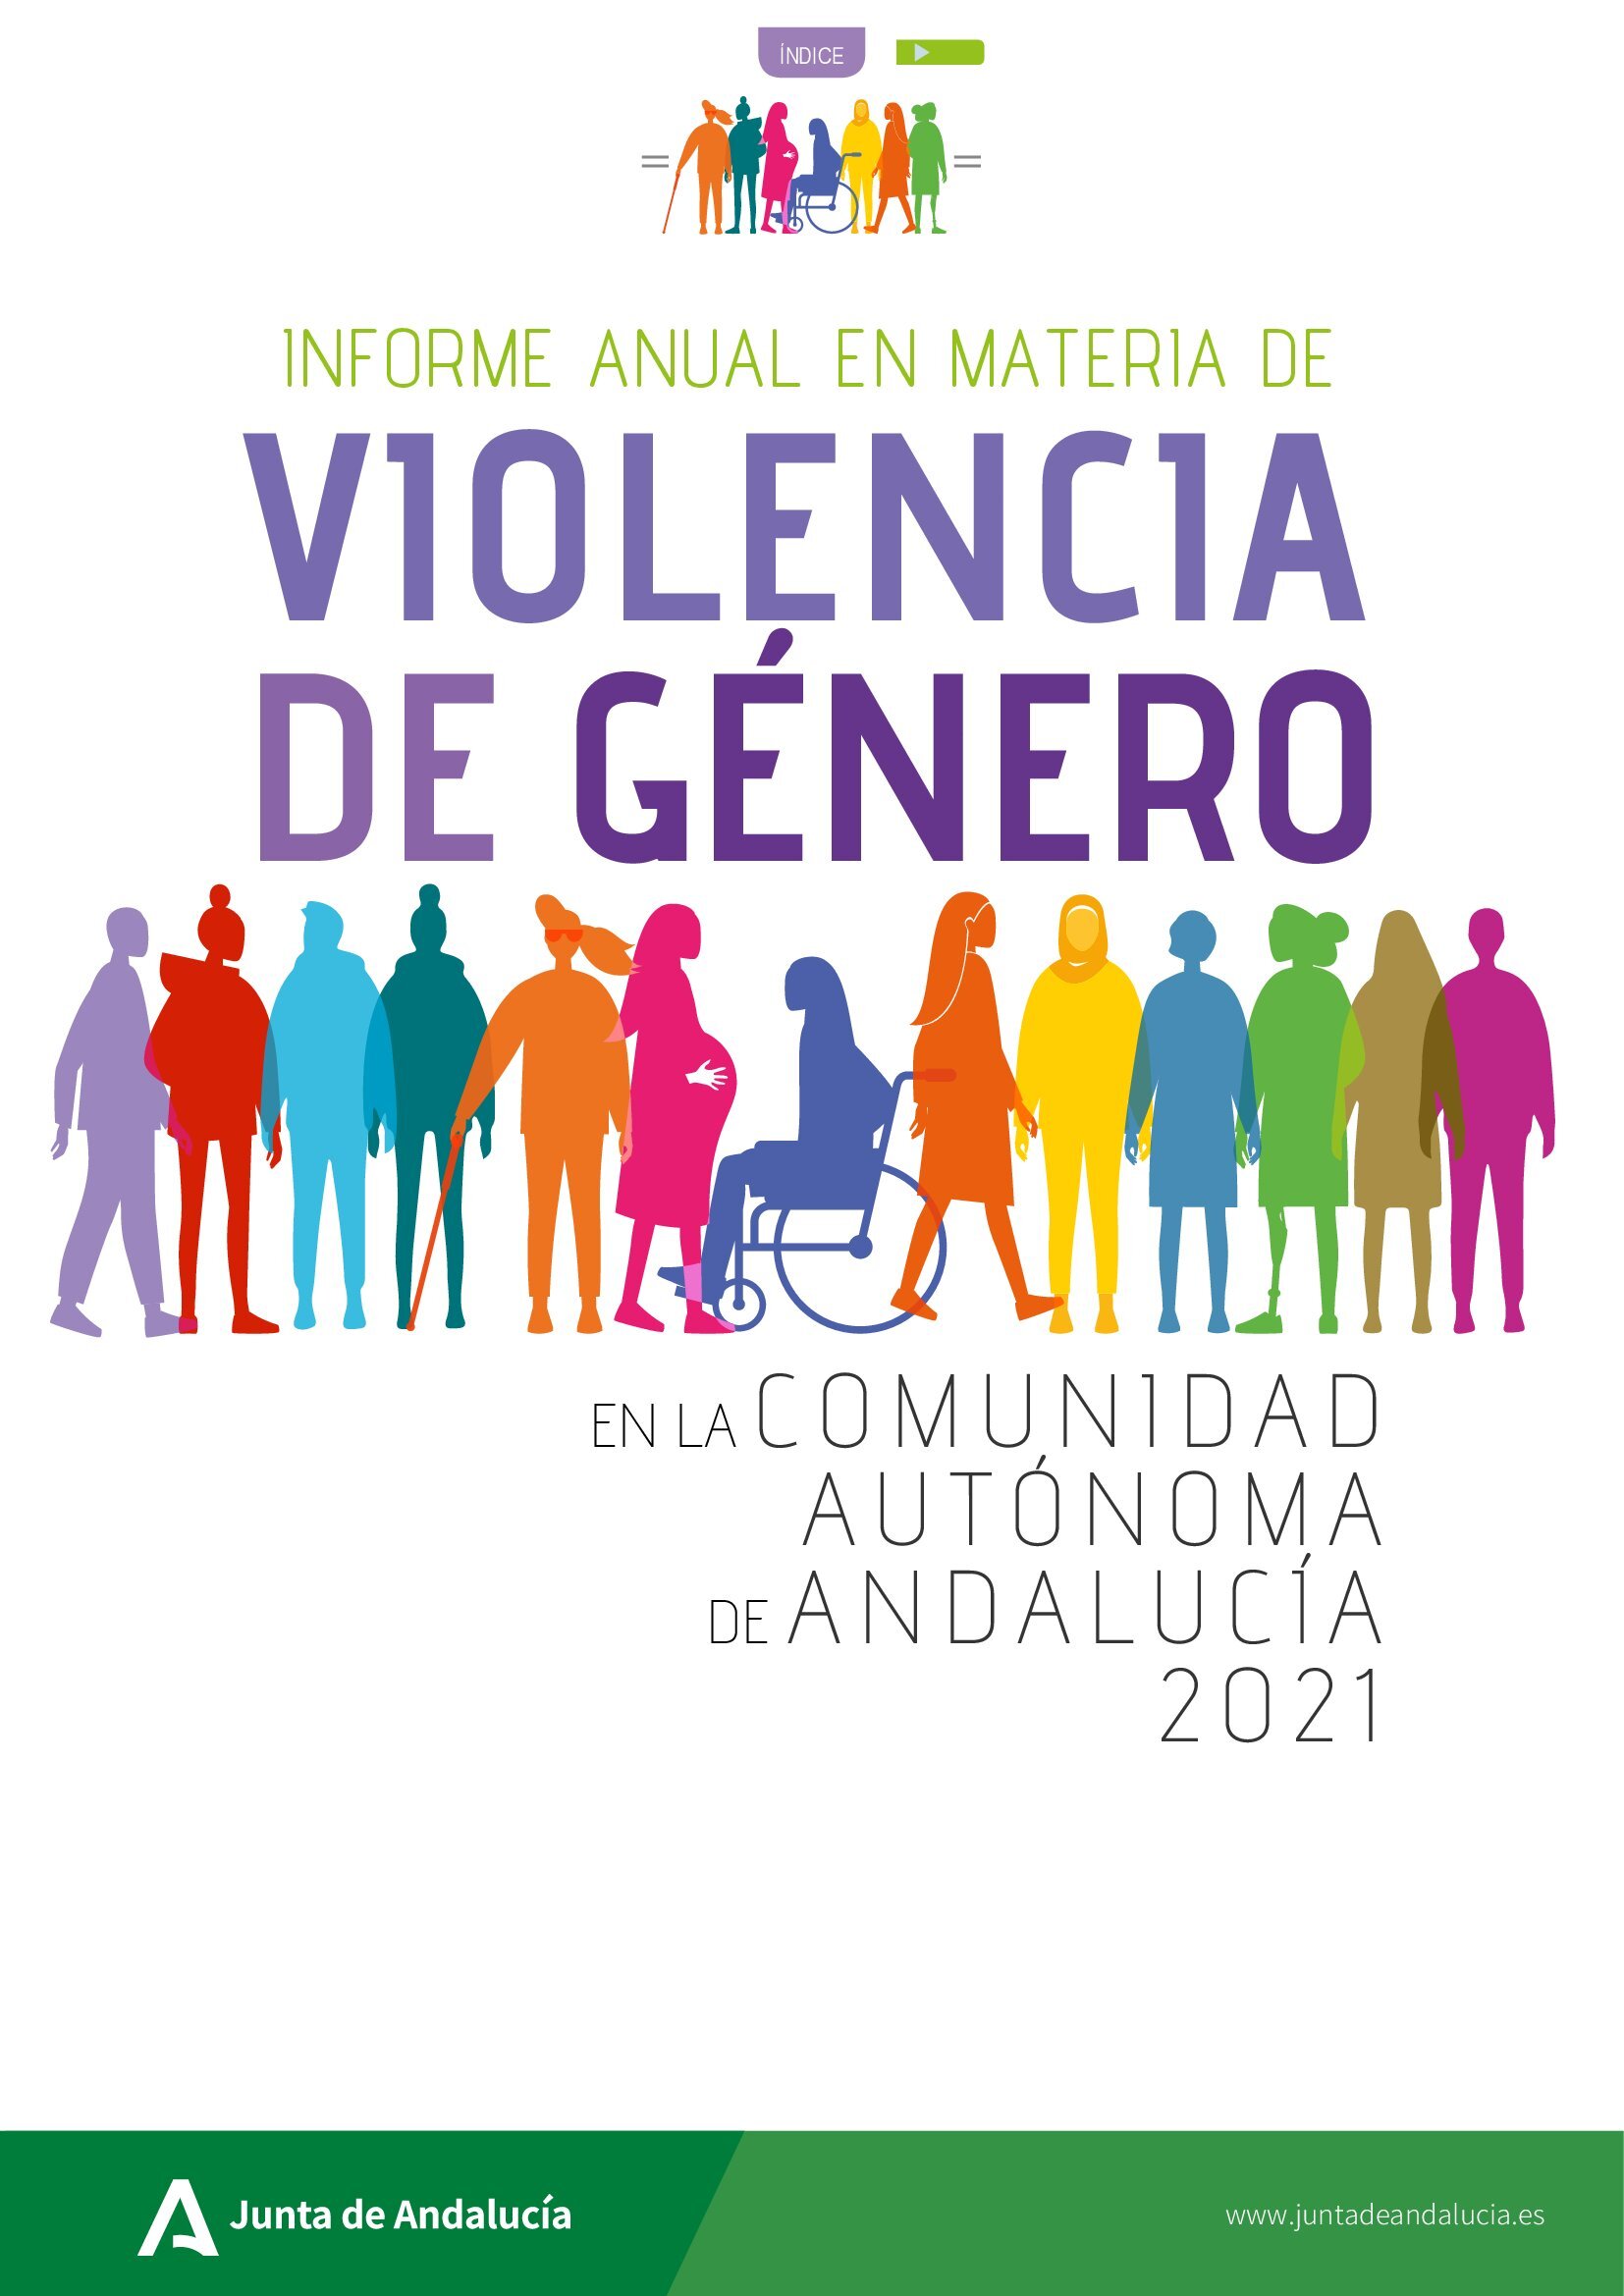 Informe Anual en Materia de Violencia de Género en la Comunidad Autónoma de Andalucía 2021